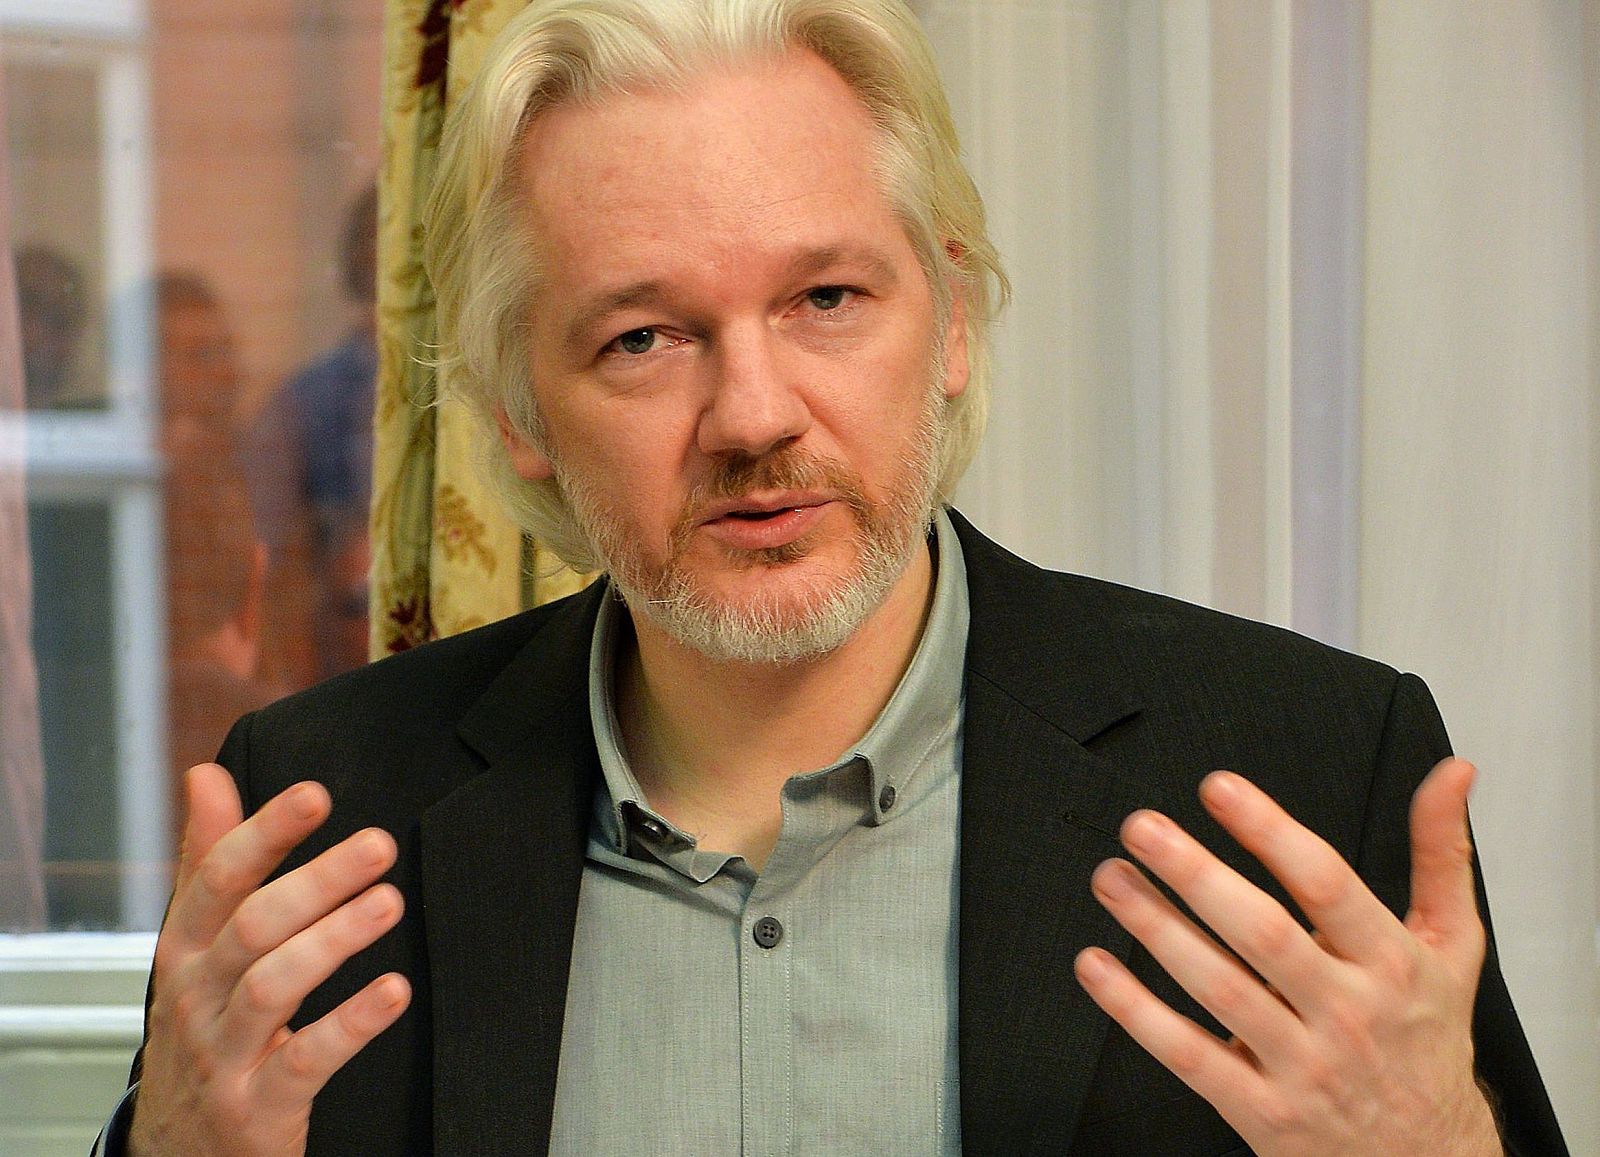 El fundador de Wikileaks, Julian Assange, en una fotografía de archvo